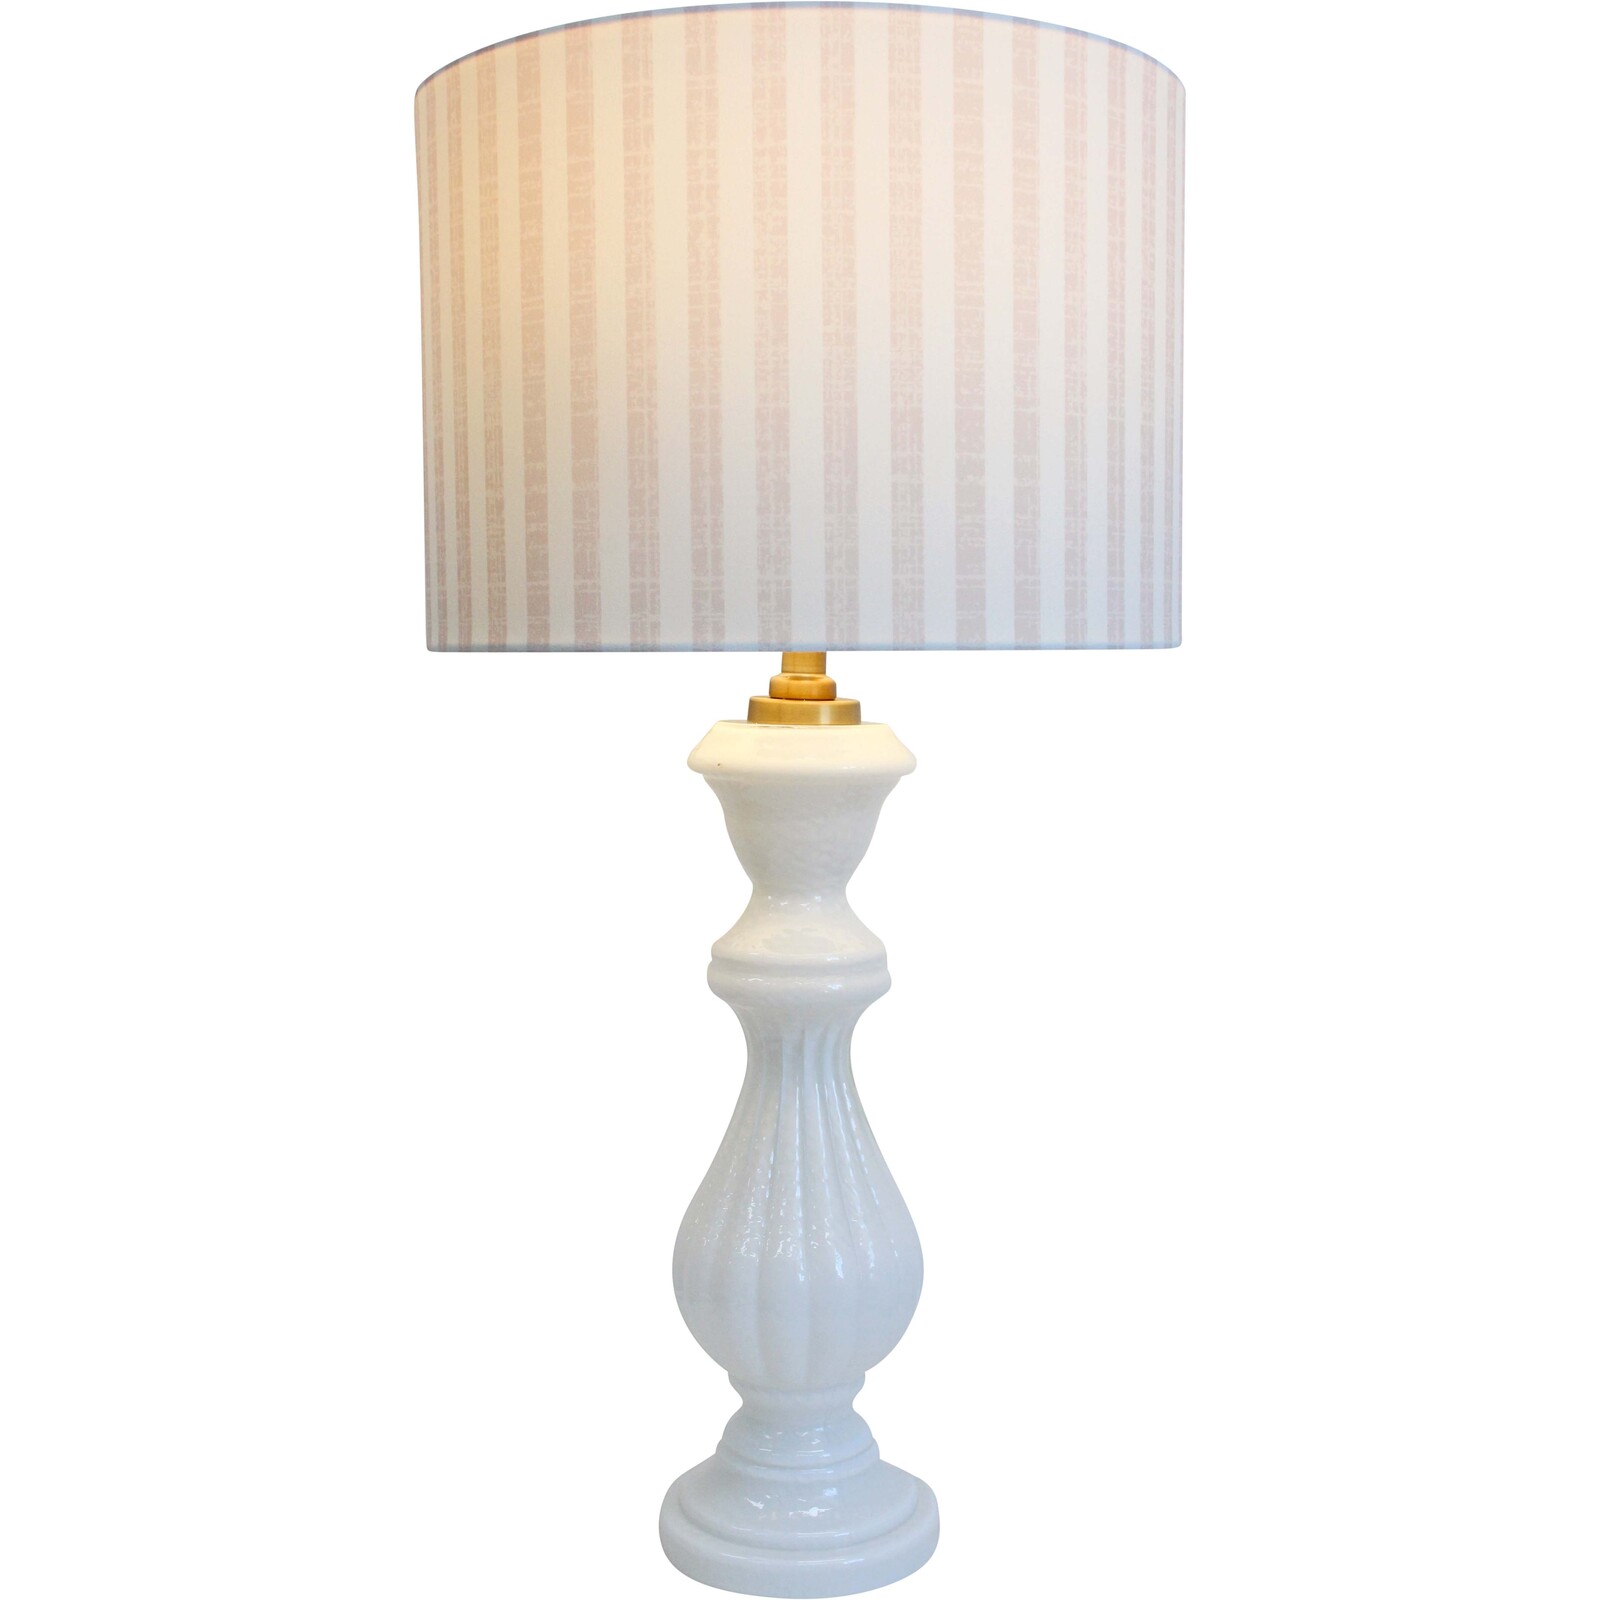 Lamp Portafino White